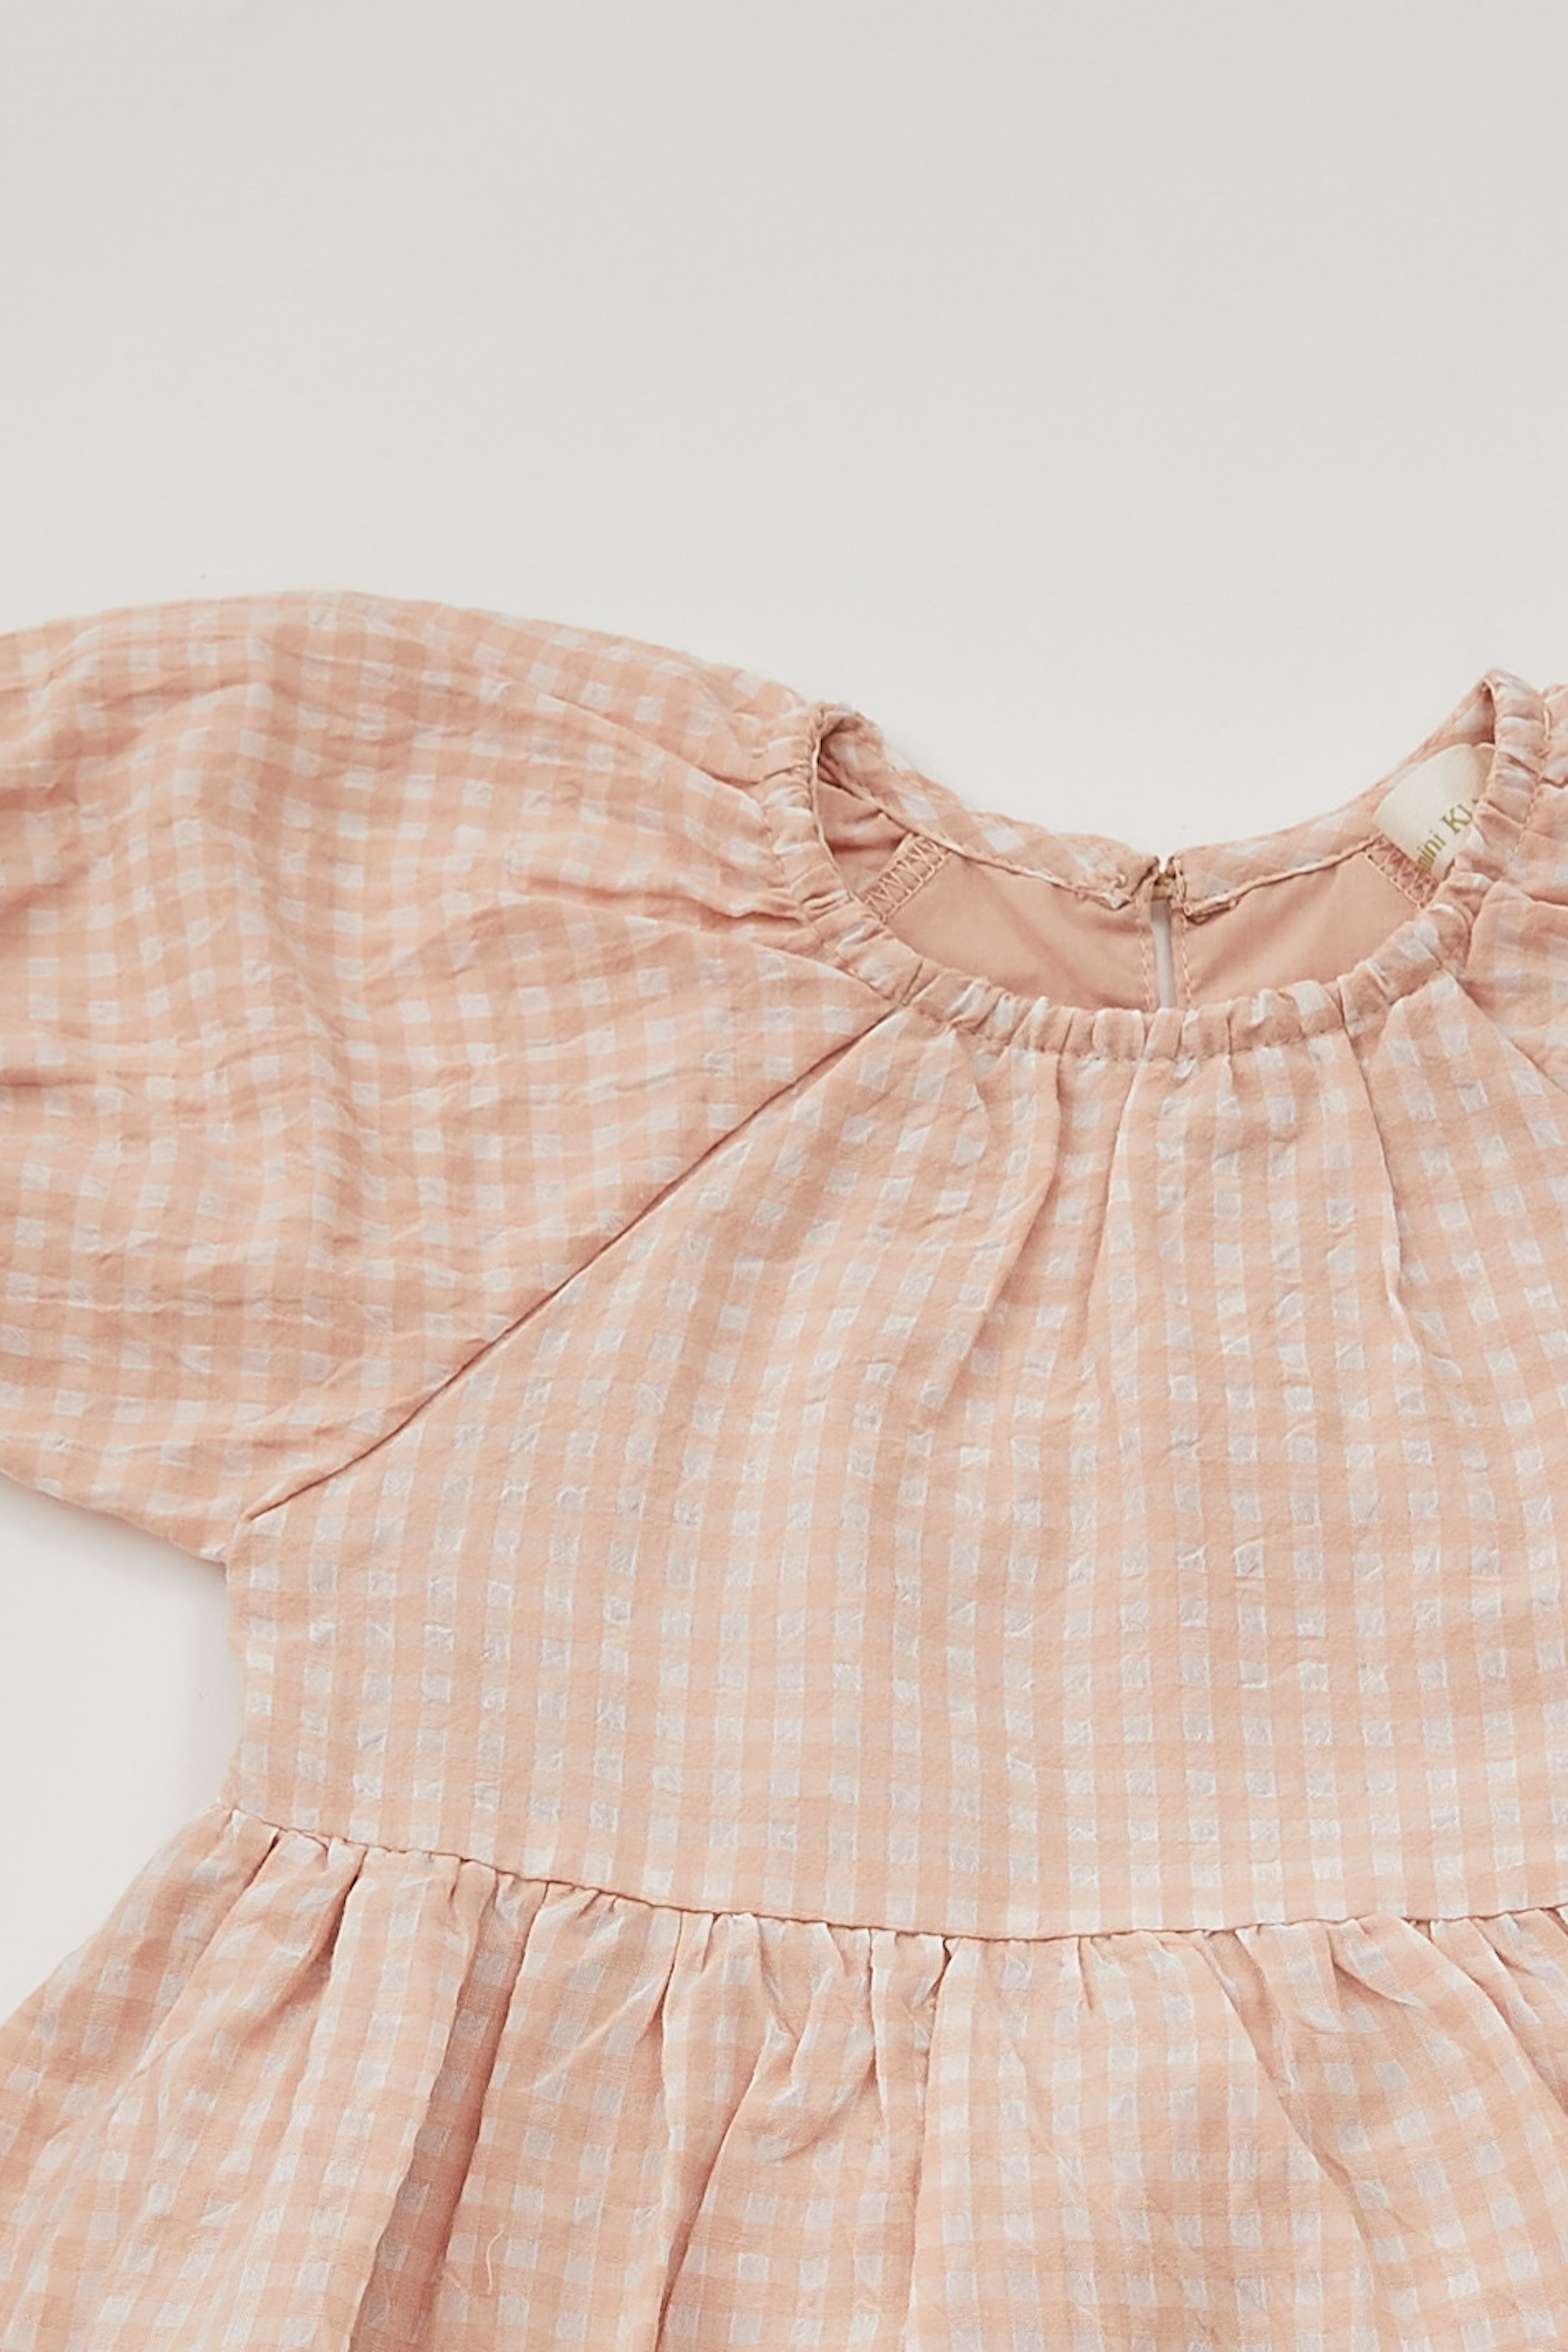 Mini Puffed Sleeved Dress in Peach